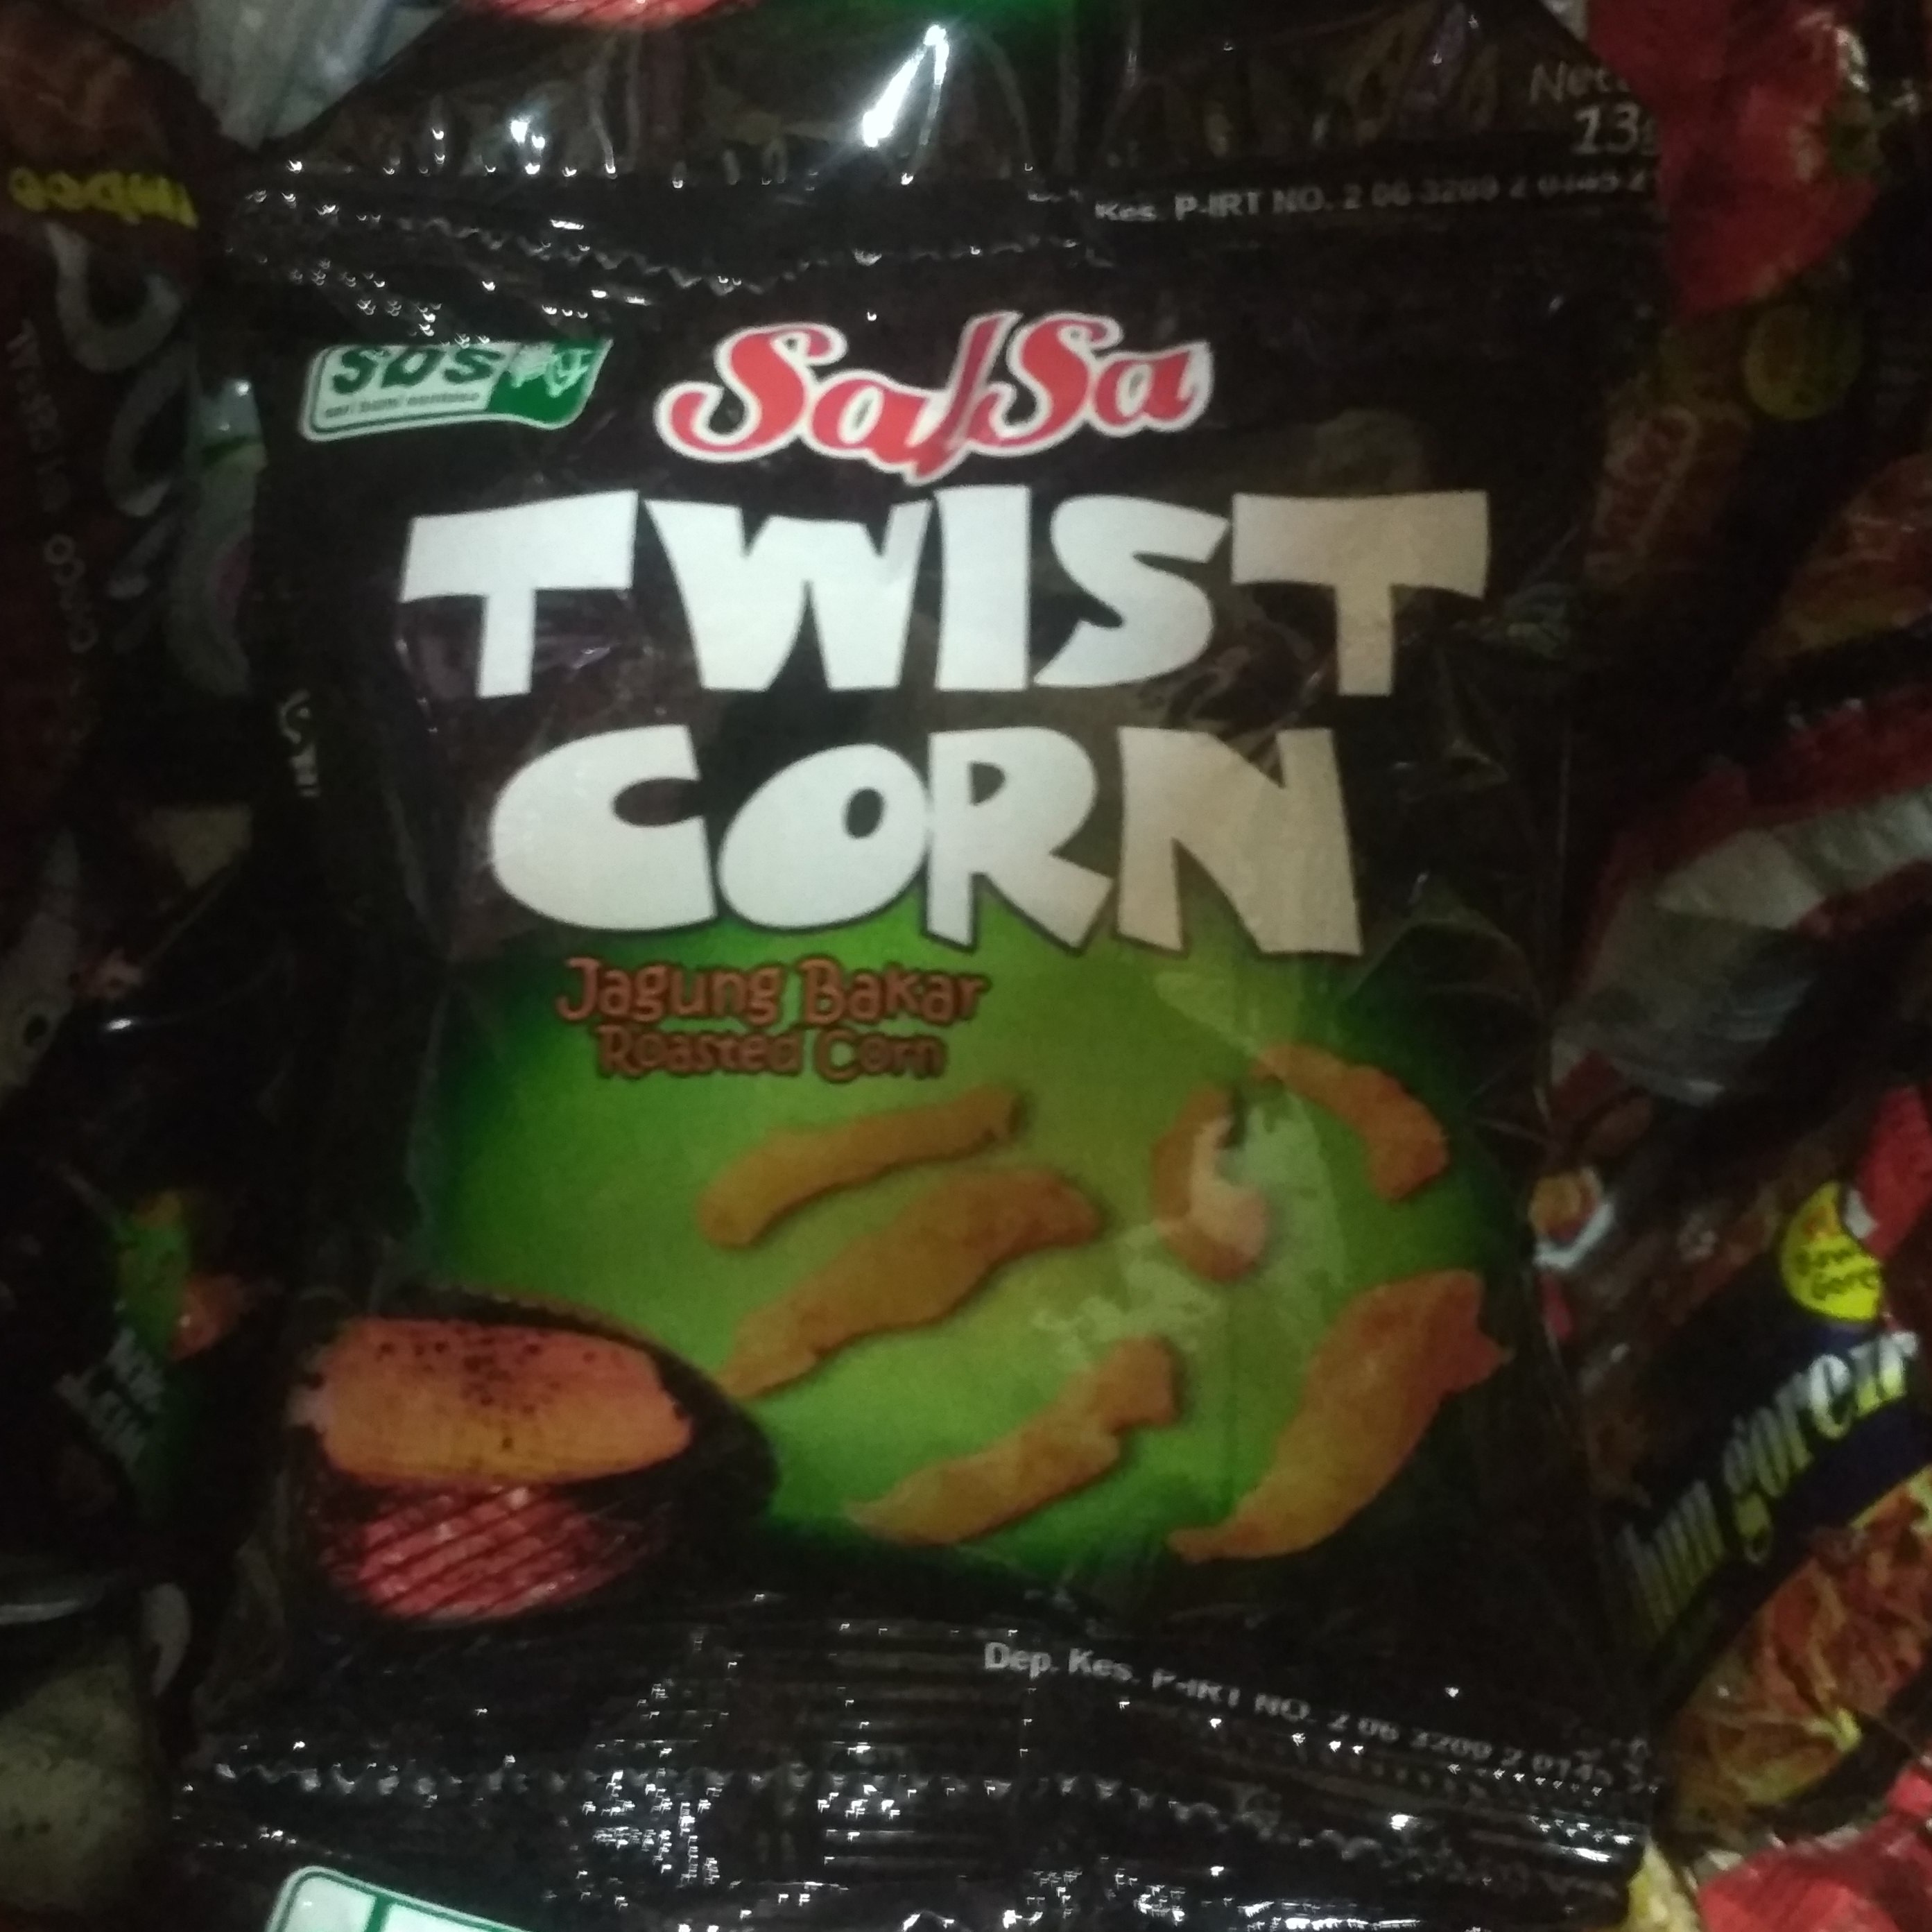 Salsa Twist Corn